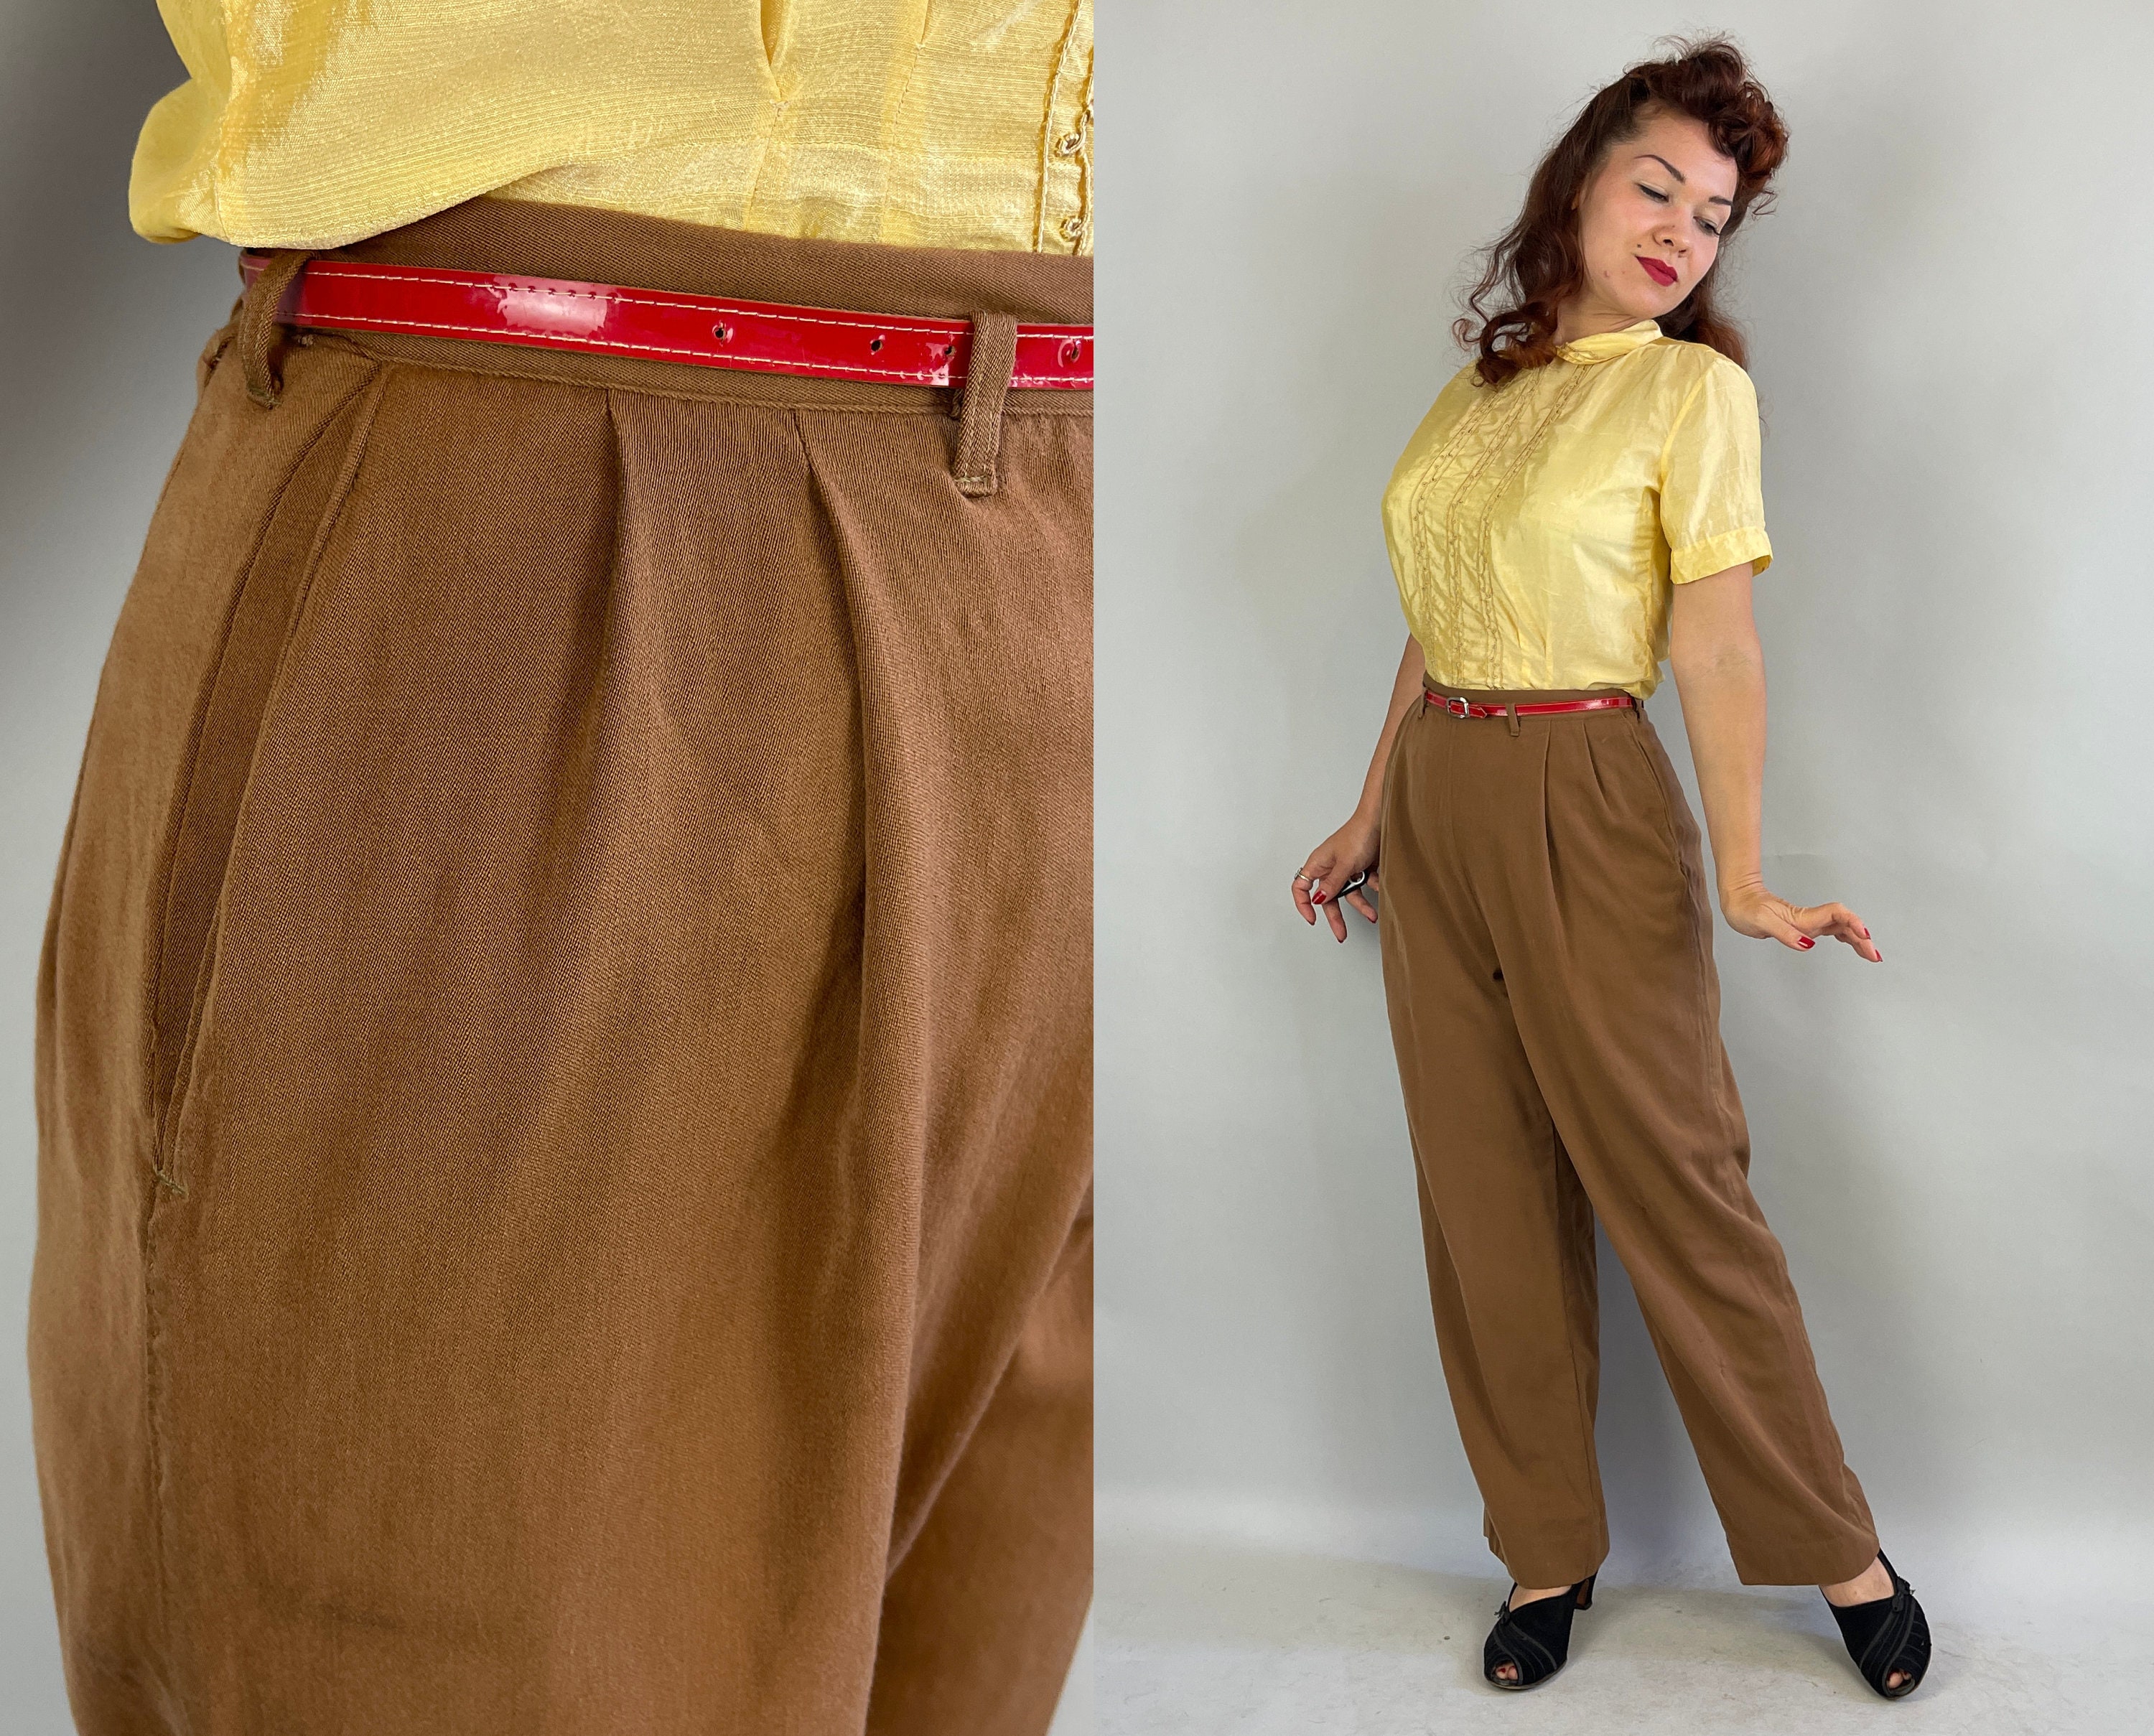 vintage pants : K014